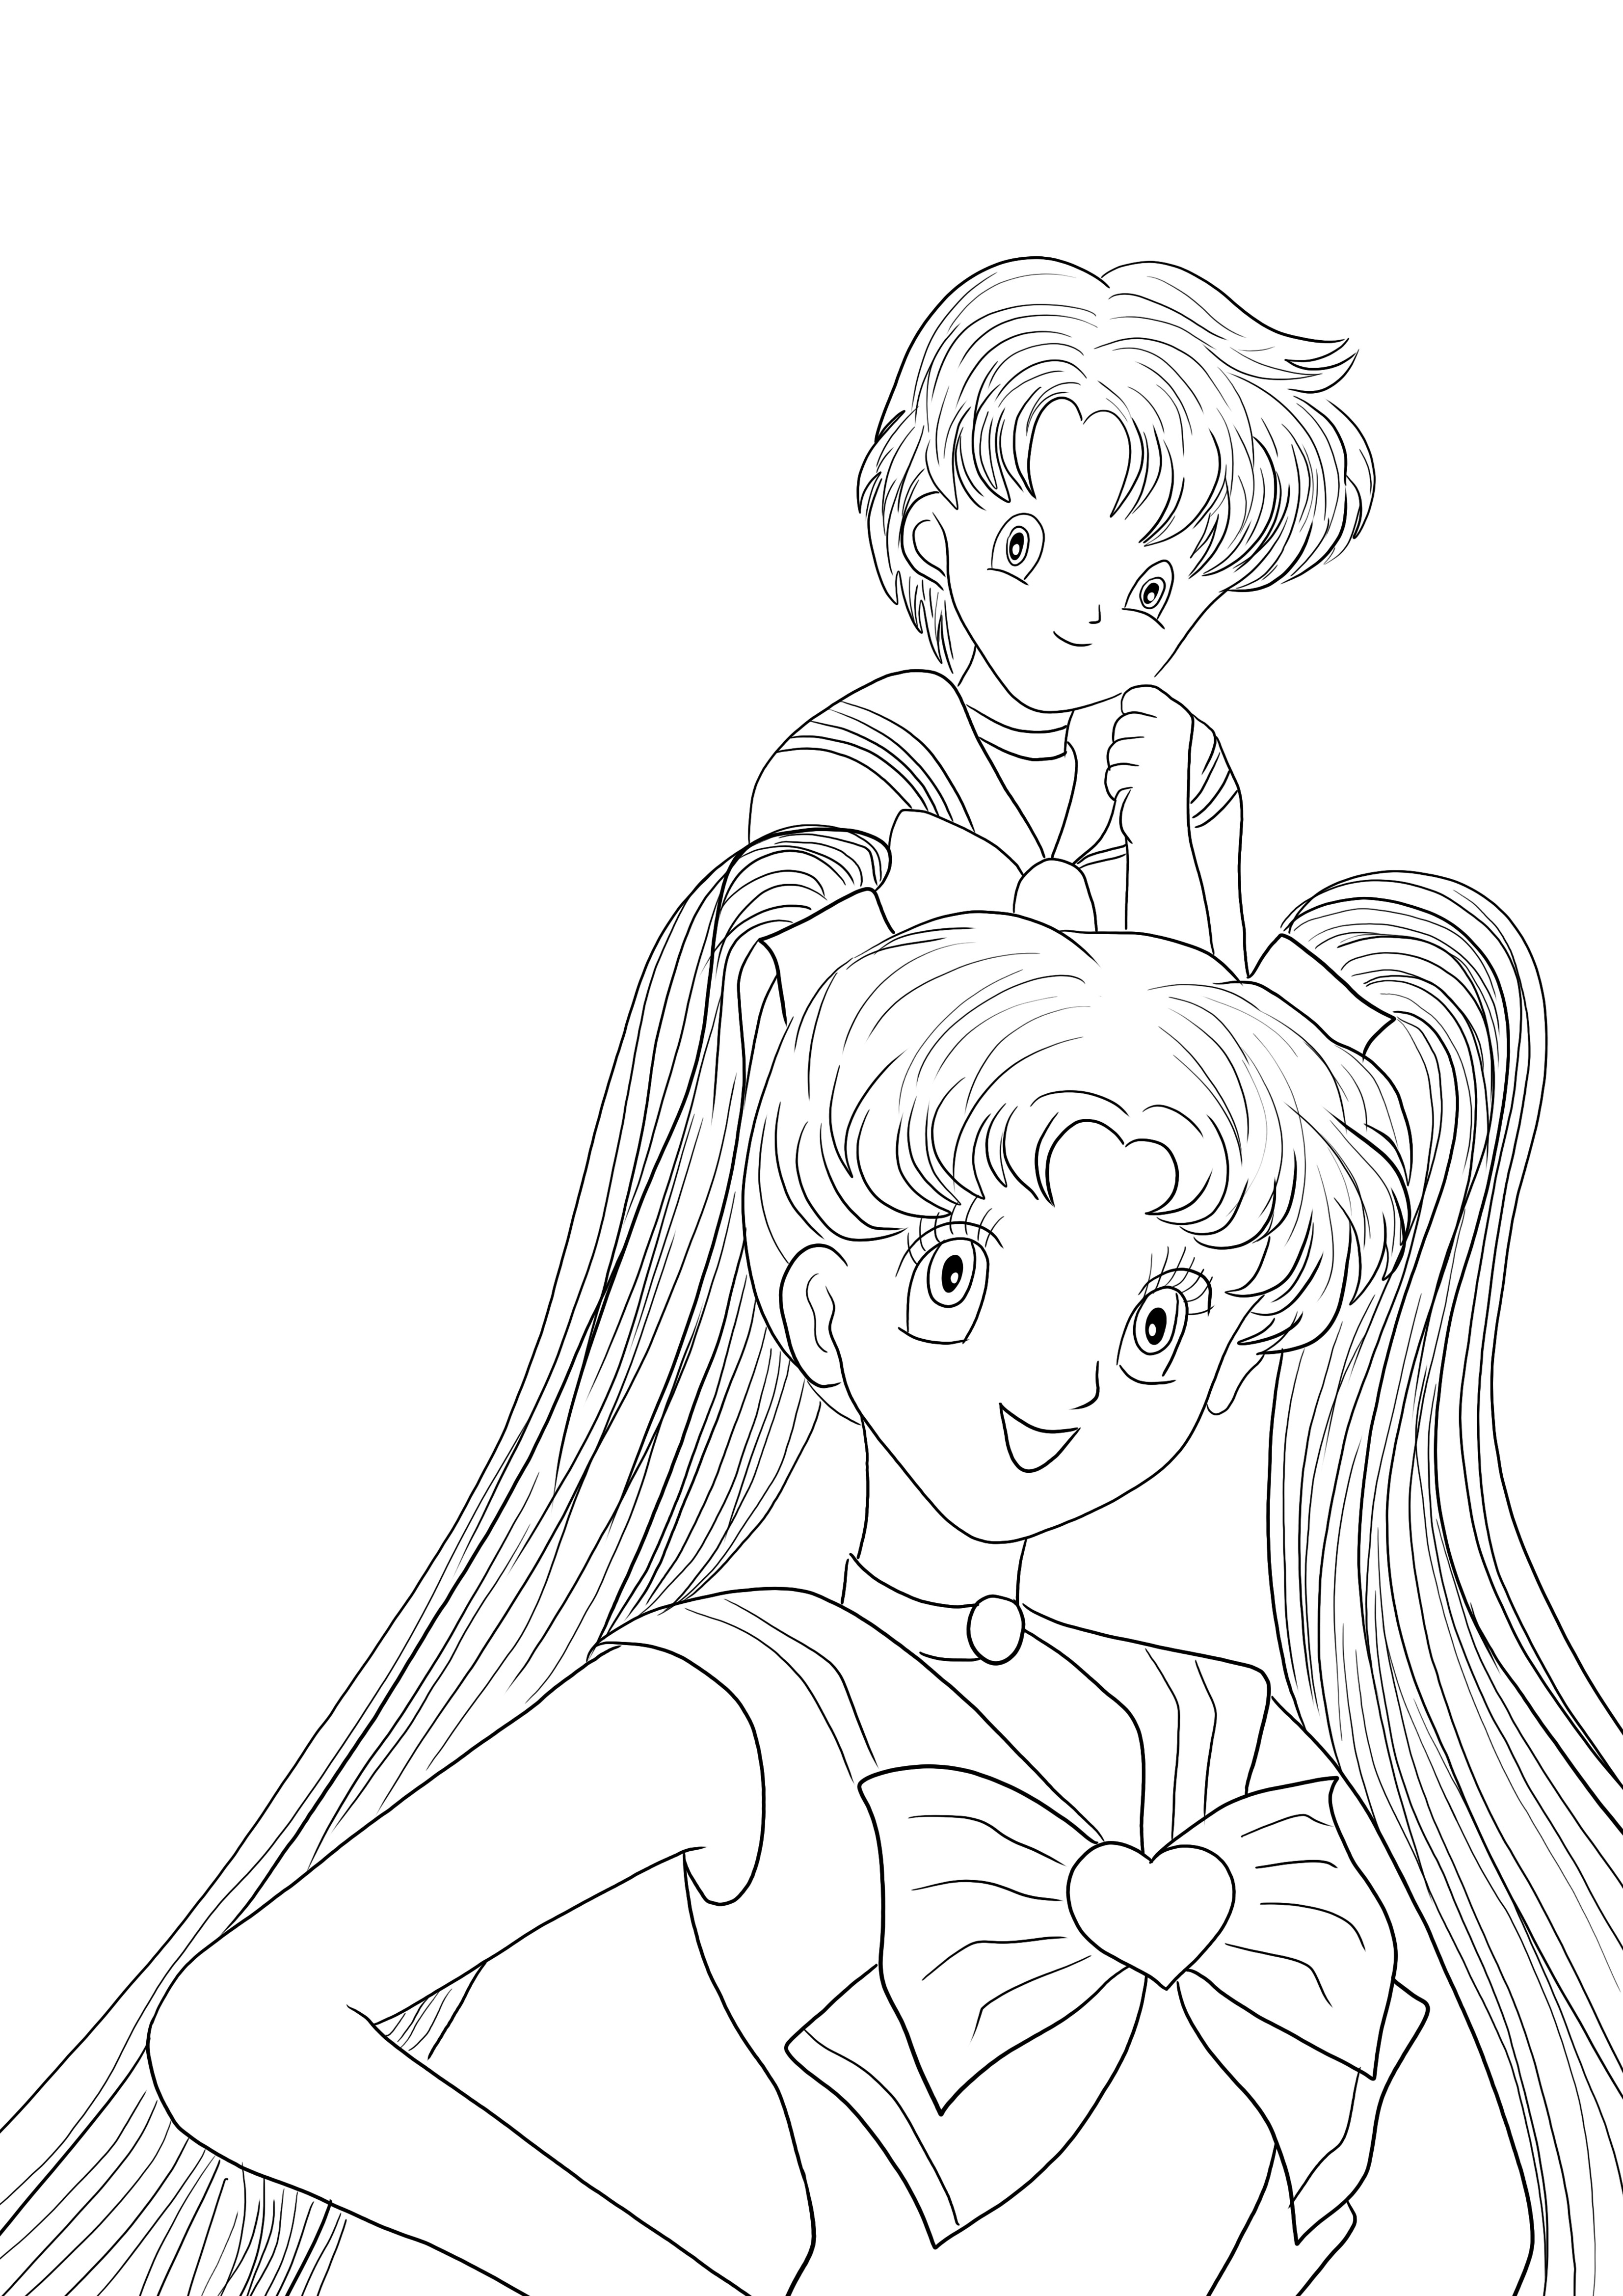 Íme egy ingyenesen letölthető Sailor Moon Girls színezőlap, amelyet gyerekek színezhetnek